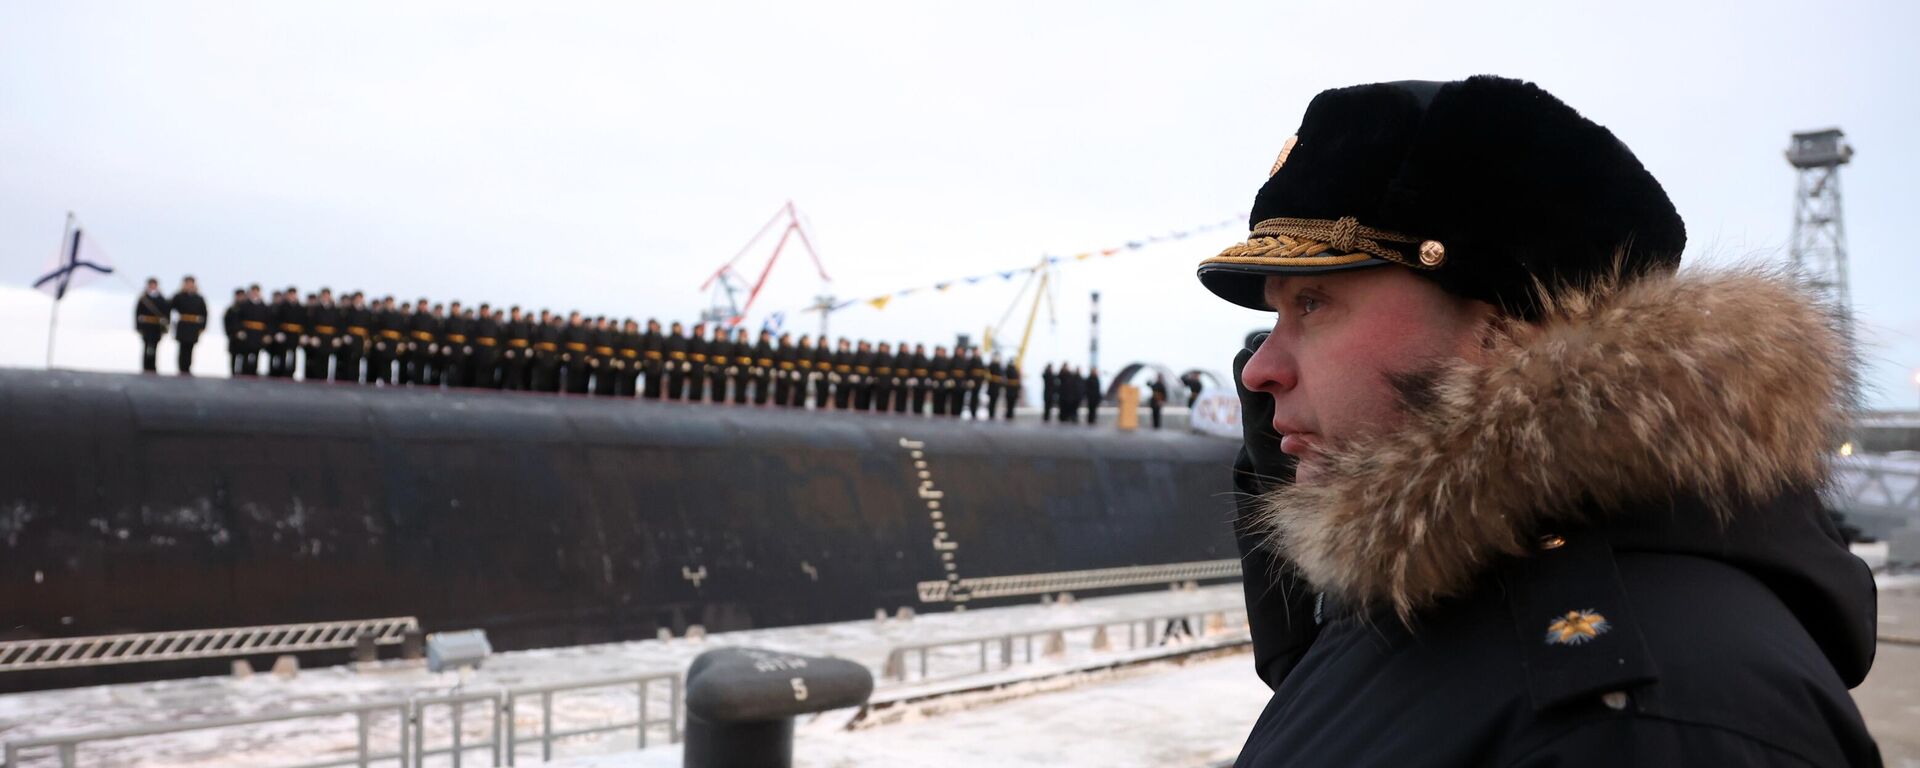 Cerimônia de hasteamento da bandeira naval no submarino nuclear Generalissimus Suvorov, que passa a integrar a Marinha da Rússia em 29 de dezembro de 2022 - Sputnik Brasil, 1920, 29.12.2022